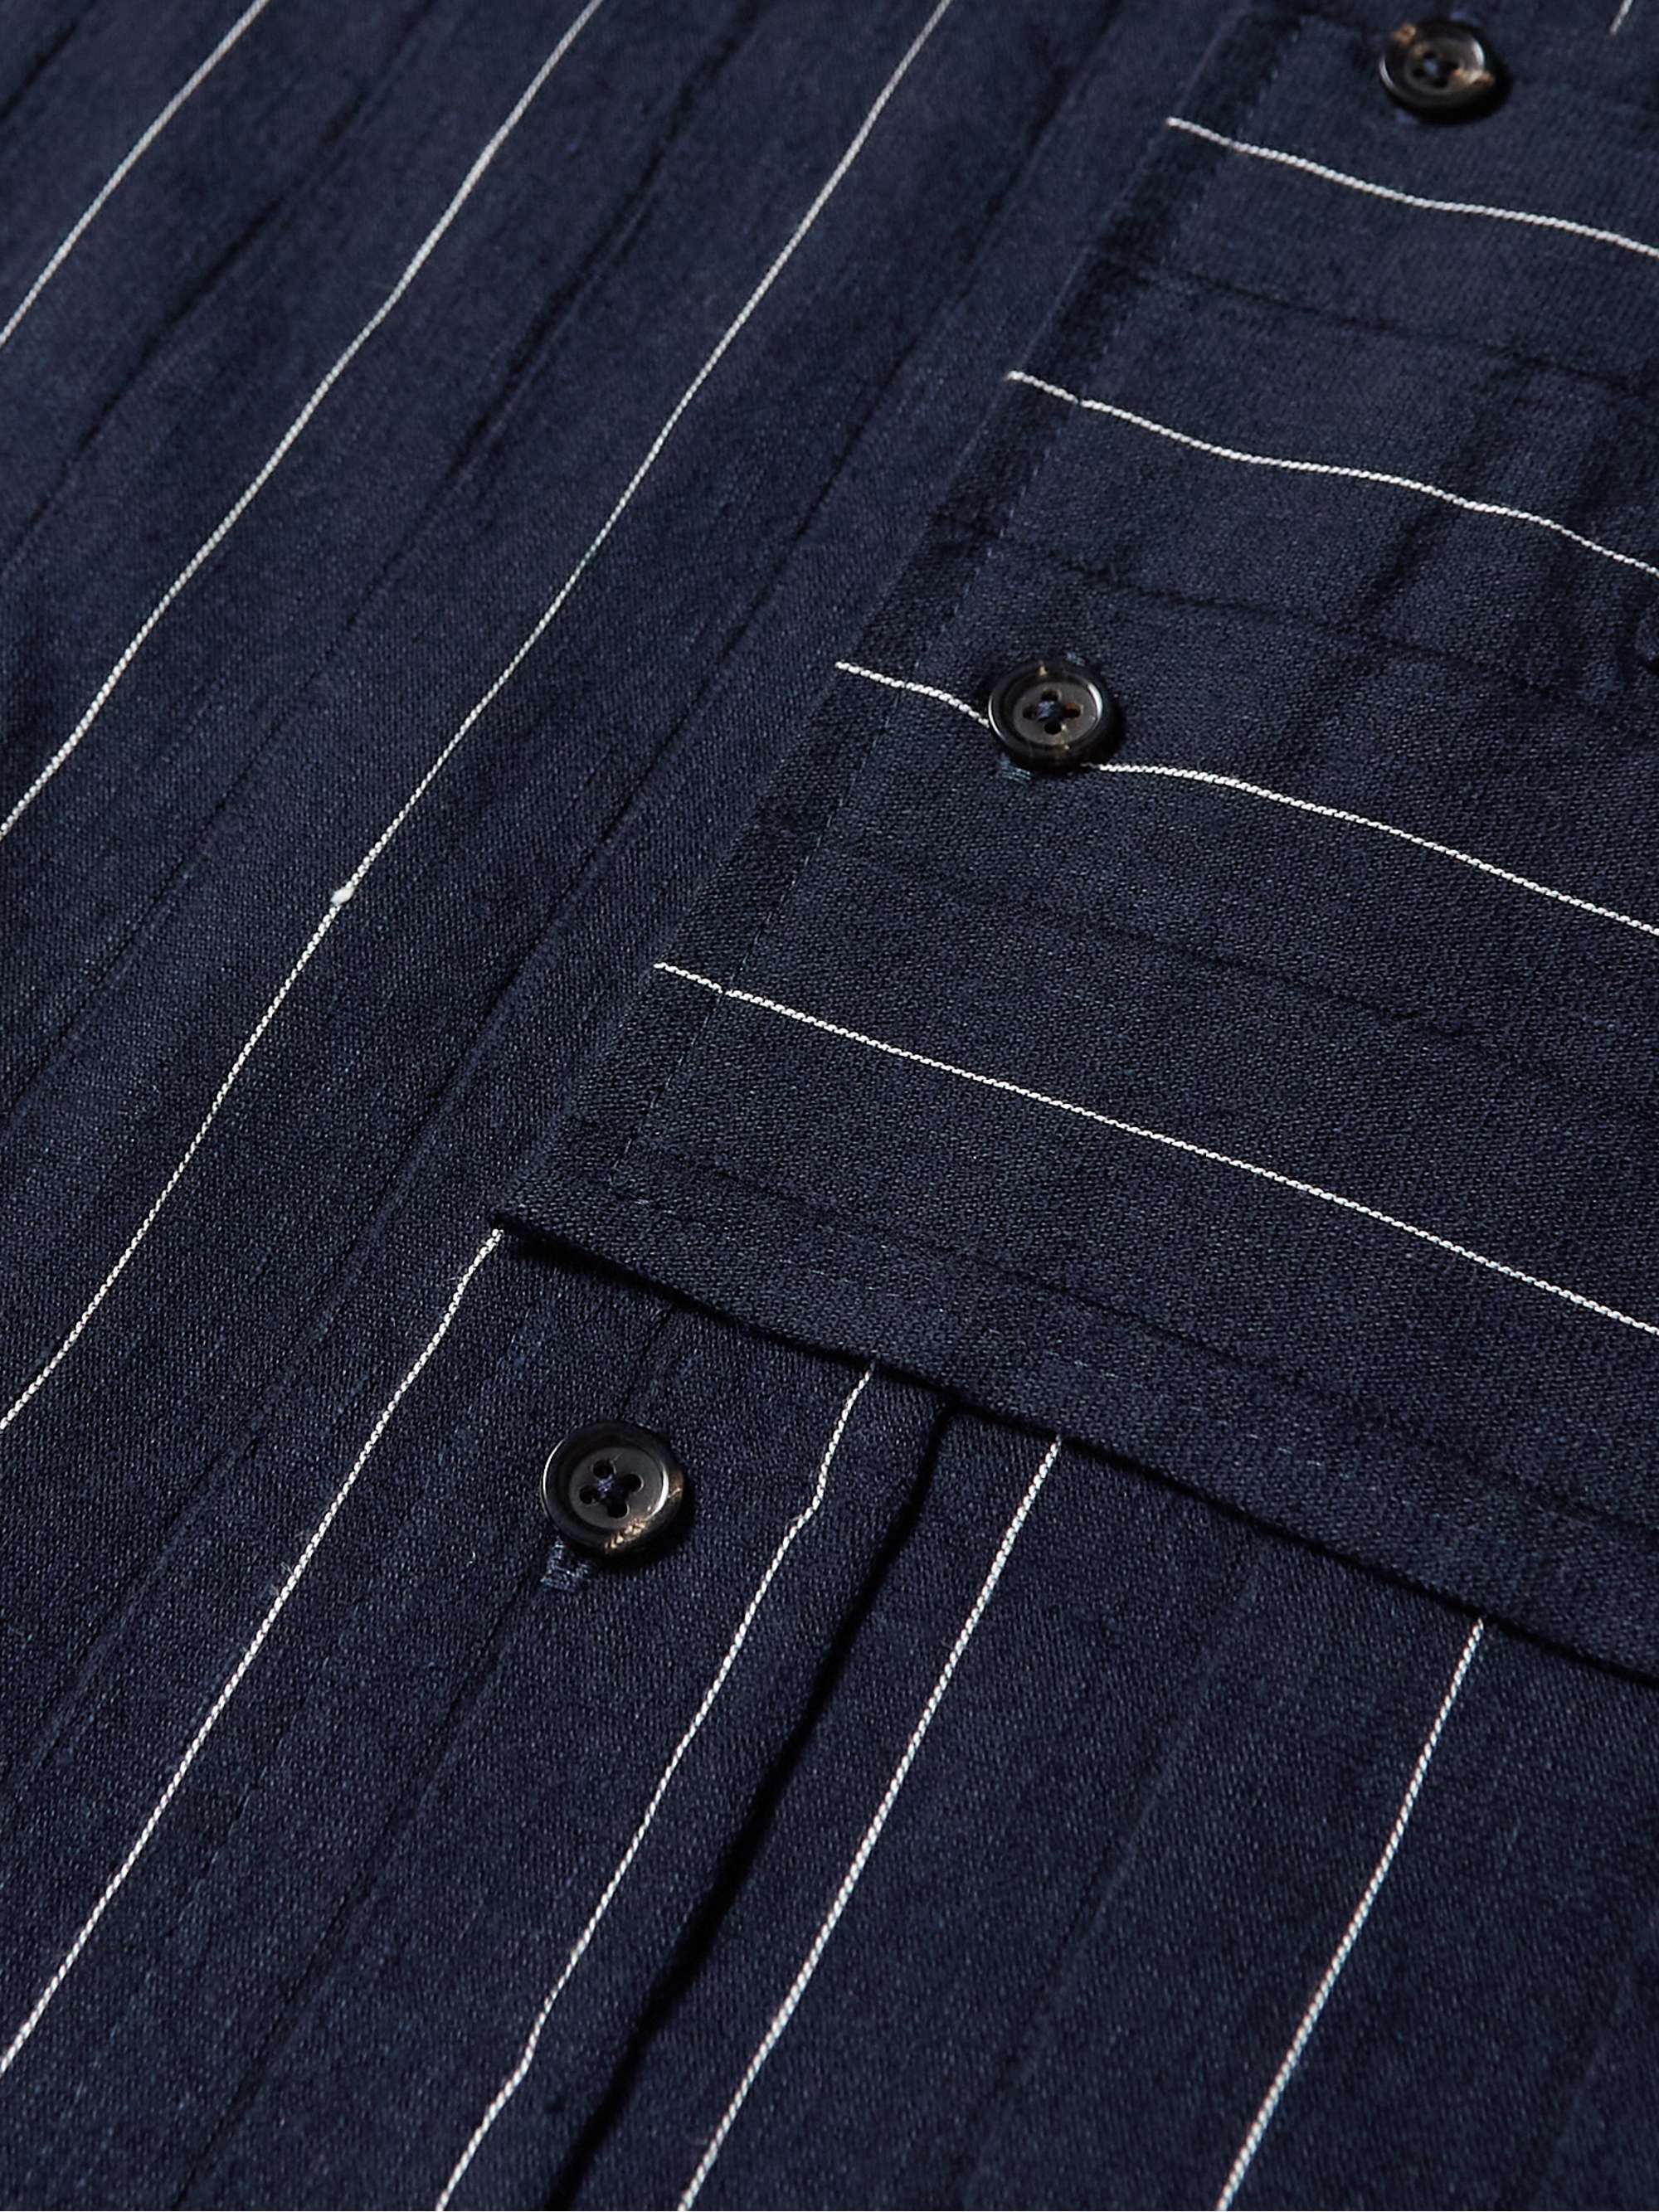 MILES LEON Zen Striped Wool, Linen and Cotton-Blend Shirt